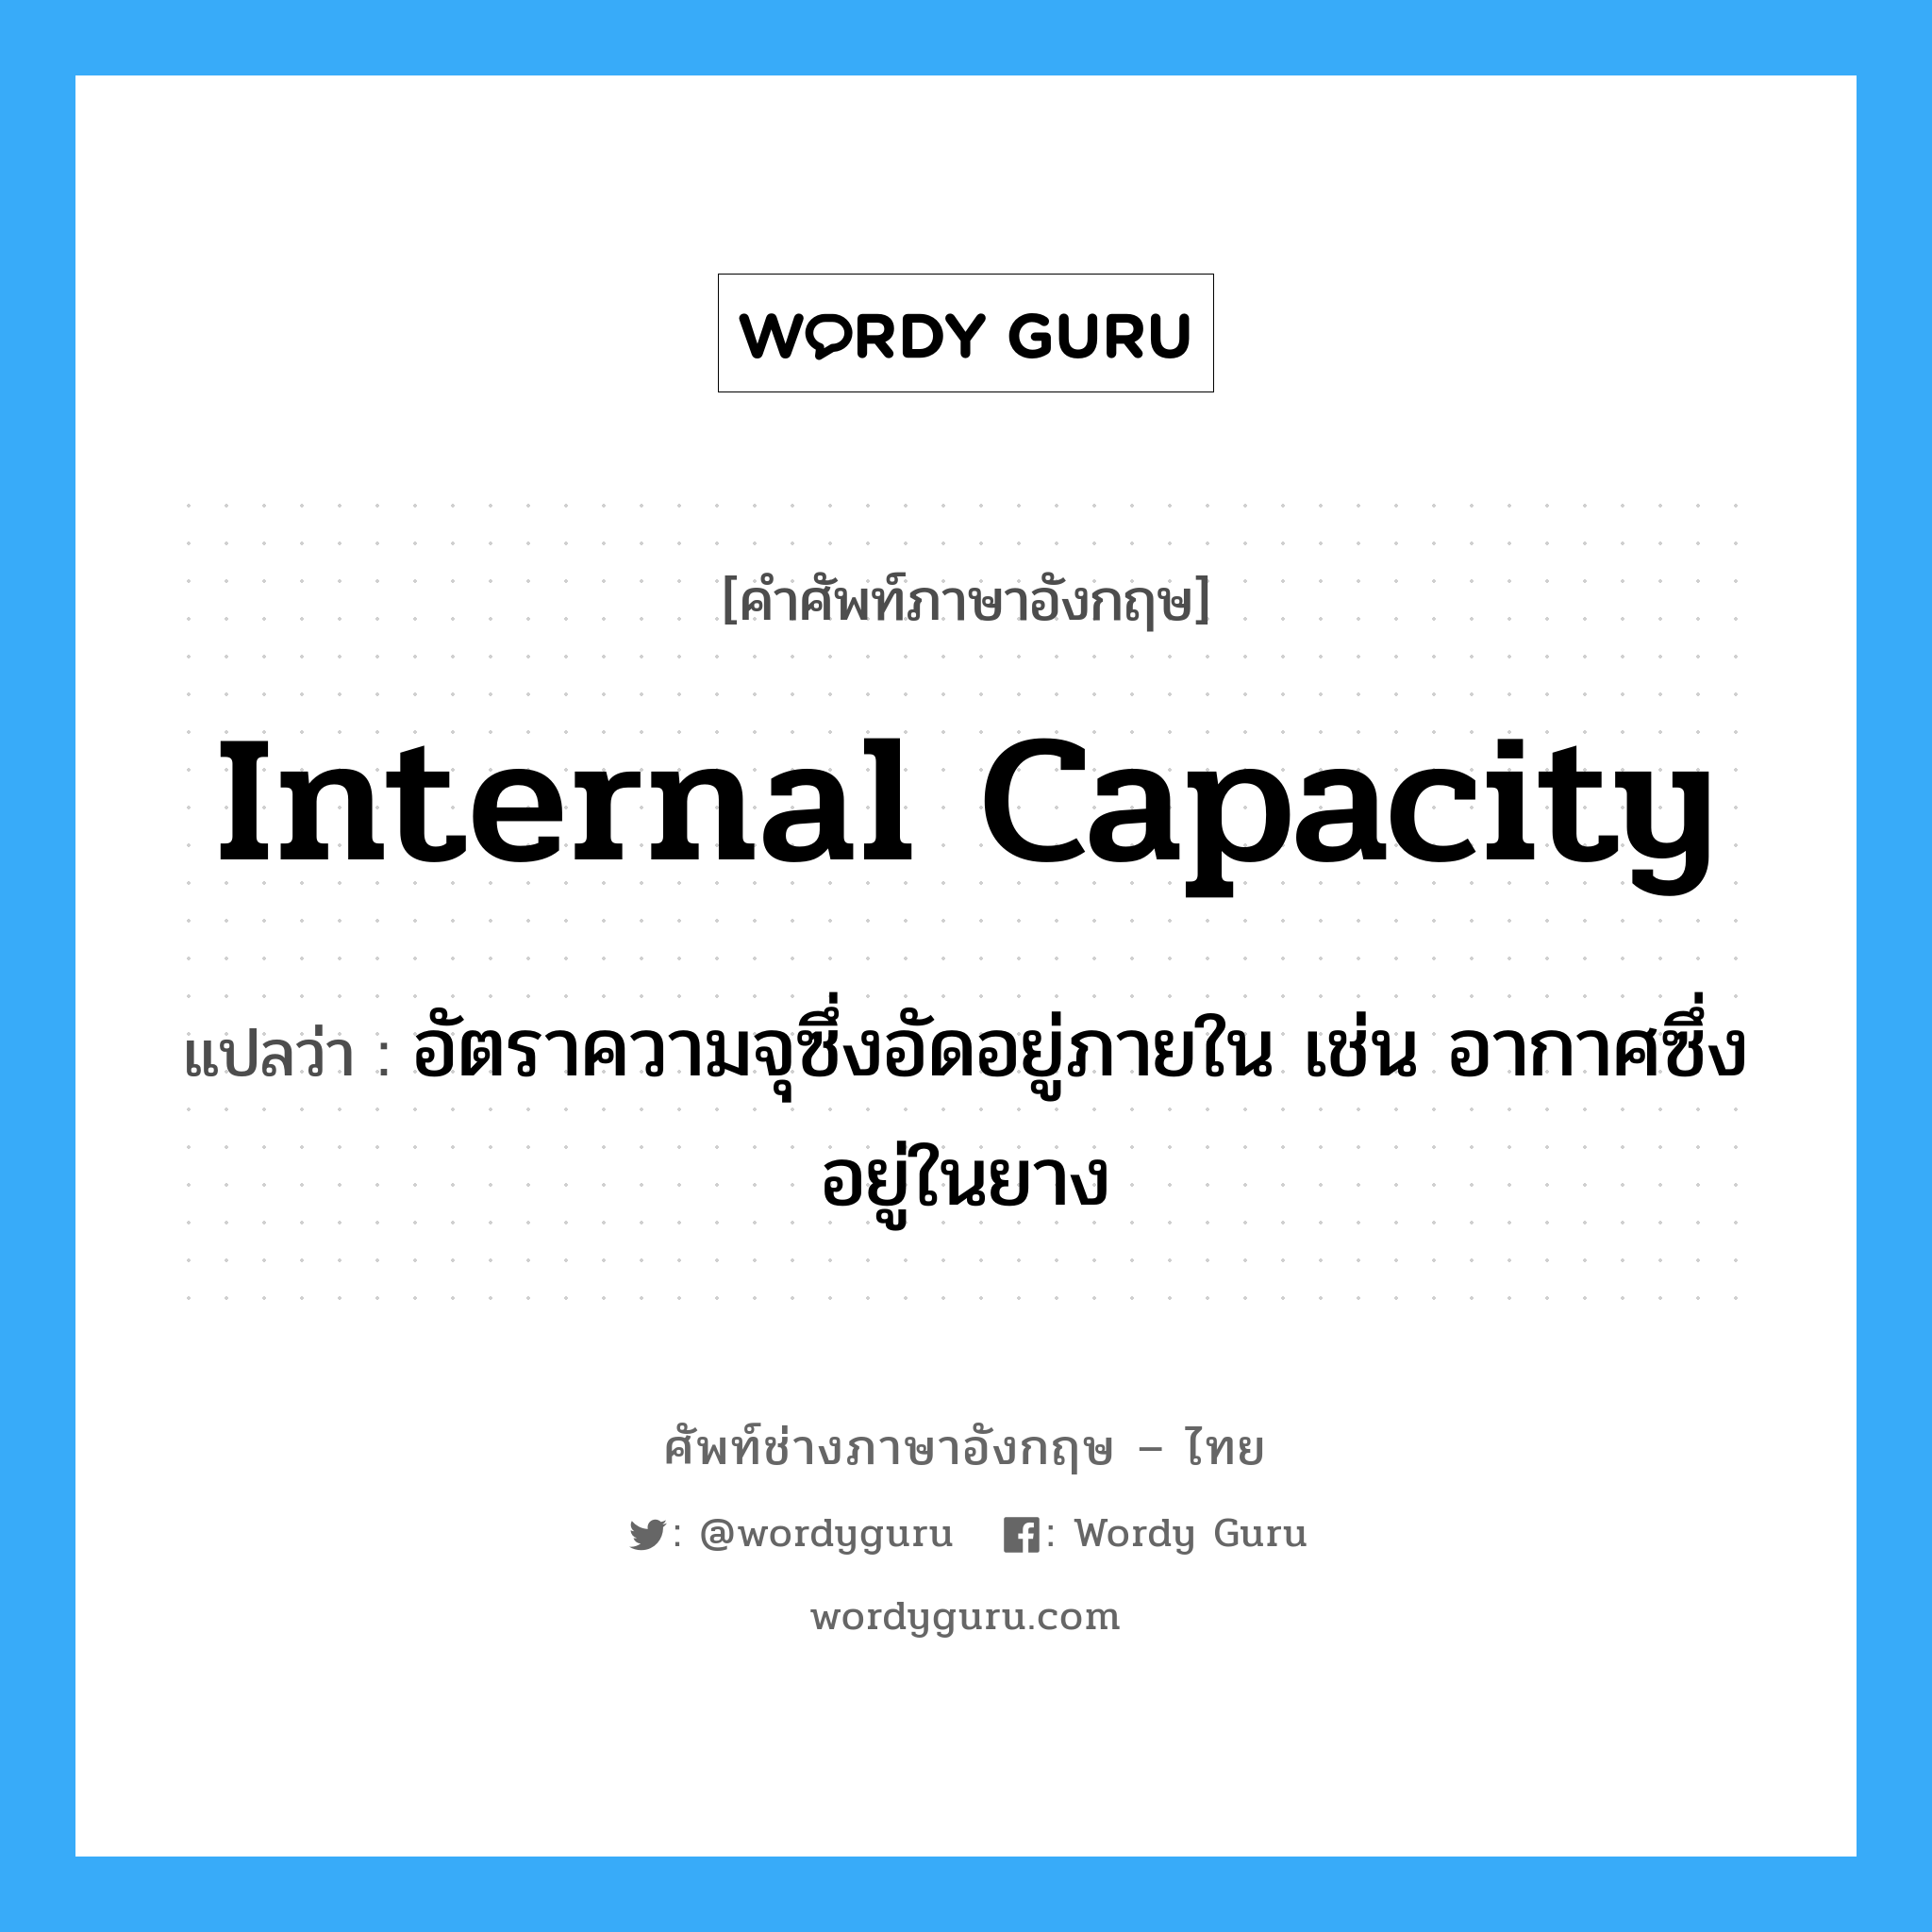 internal capacity แปลว่า?, คำศัพท์ช่างภาษาอังกฤษ - ไทย internal capacity คำศัพท์ภาษาอังกฤษ internal capacity แปลว่า อัตราความจุซึ่งอัดอยู่ภายใน เช่น อากาศซึ่งอยู่ในยาง